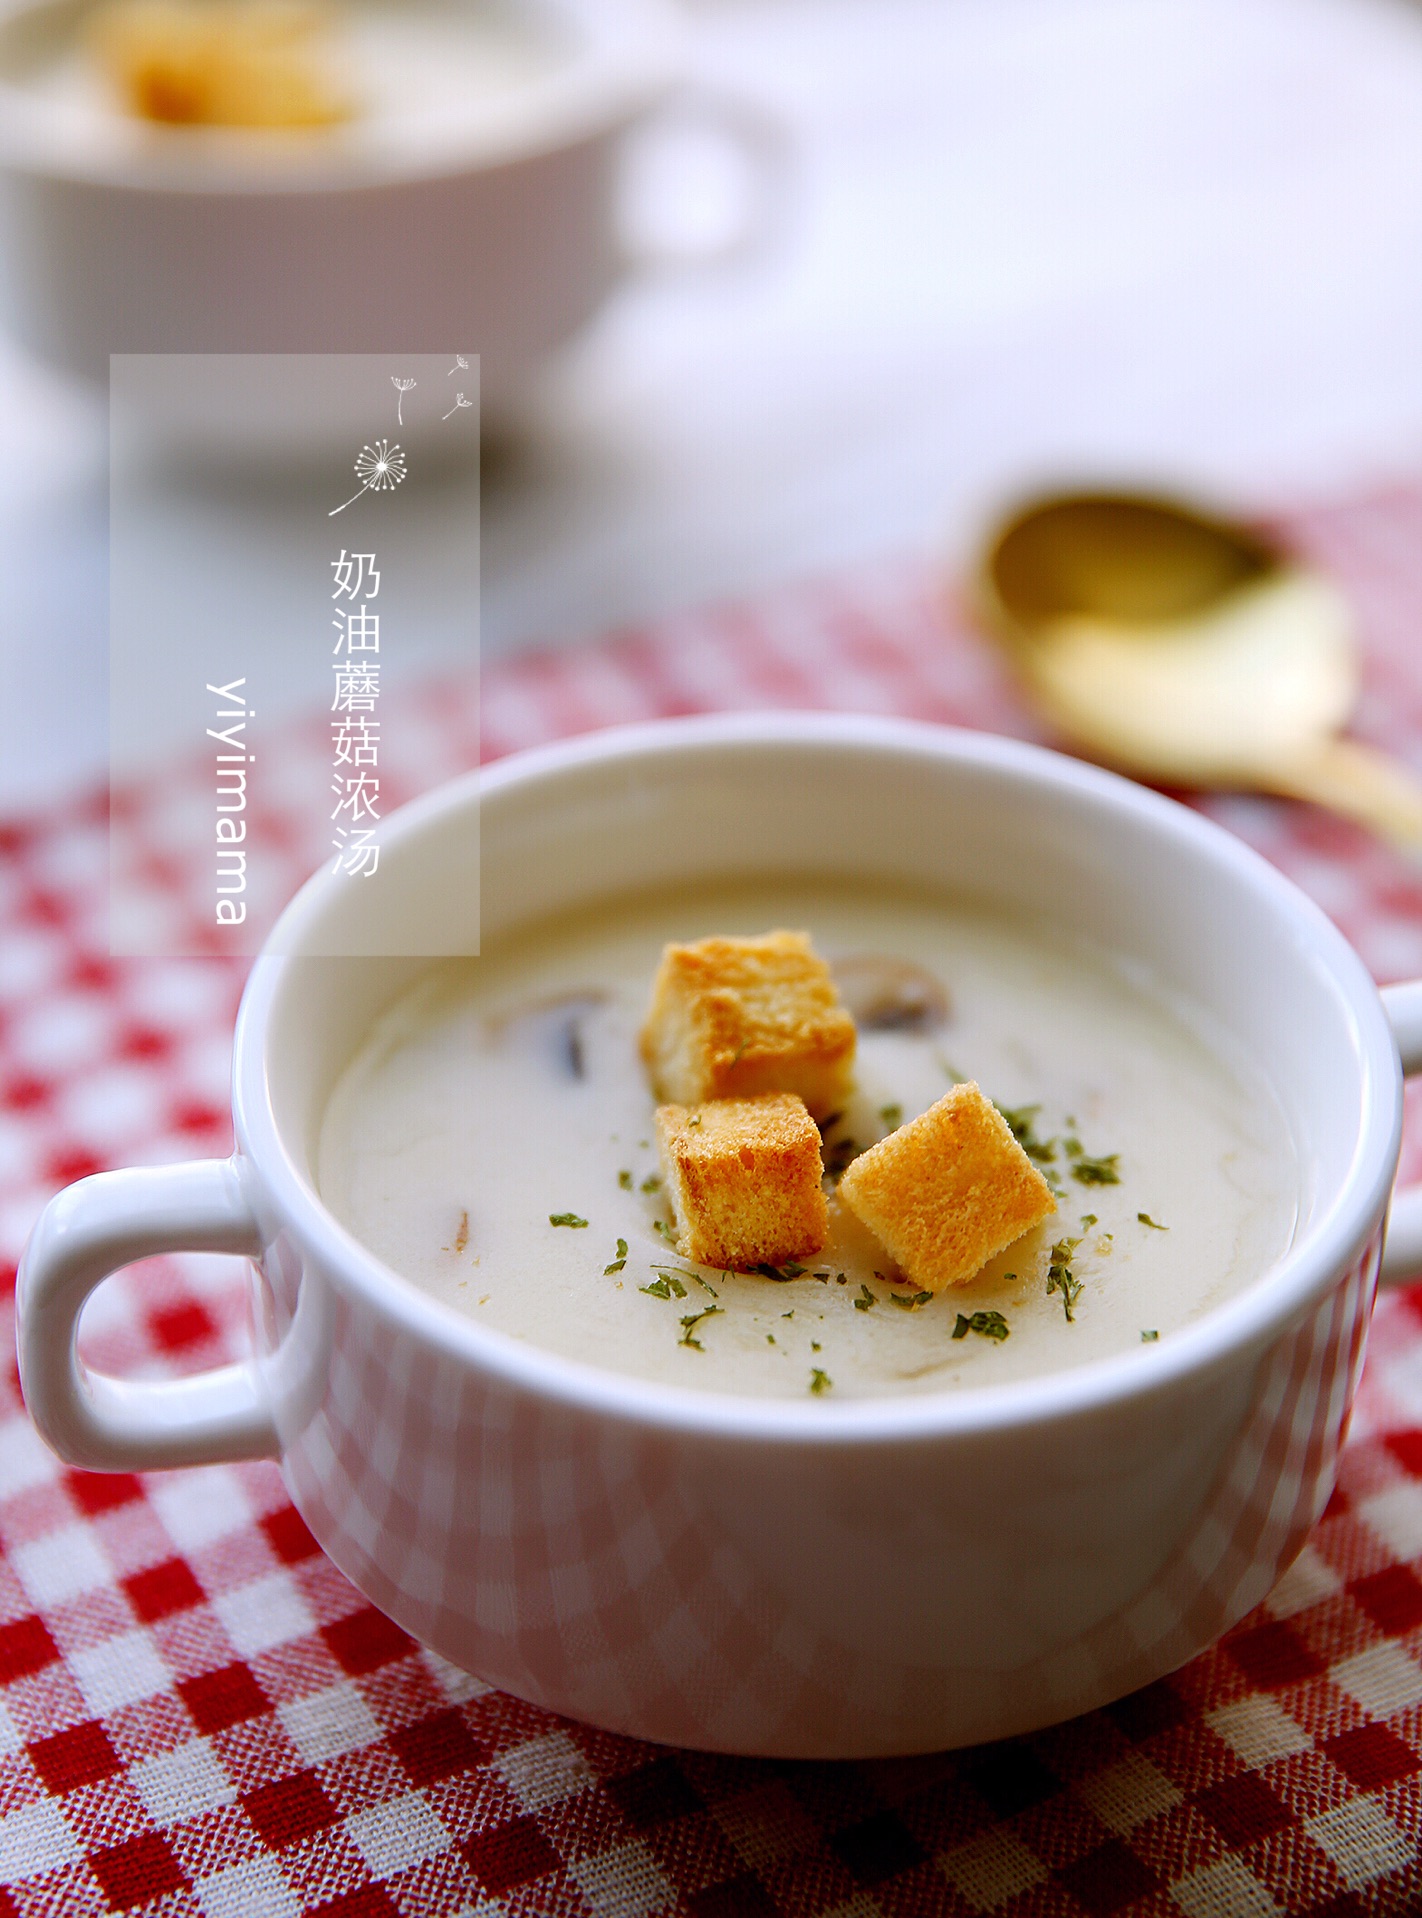 菌菇豆腐汤的做法_菌菇豆腐汤怎么做_菌菇豆腐汤的家常做法_蓝莓【心食谱】